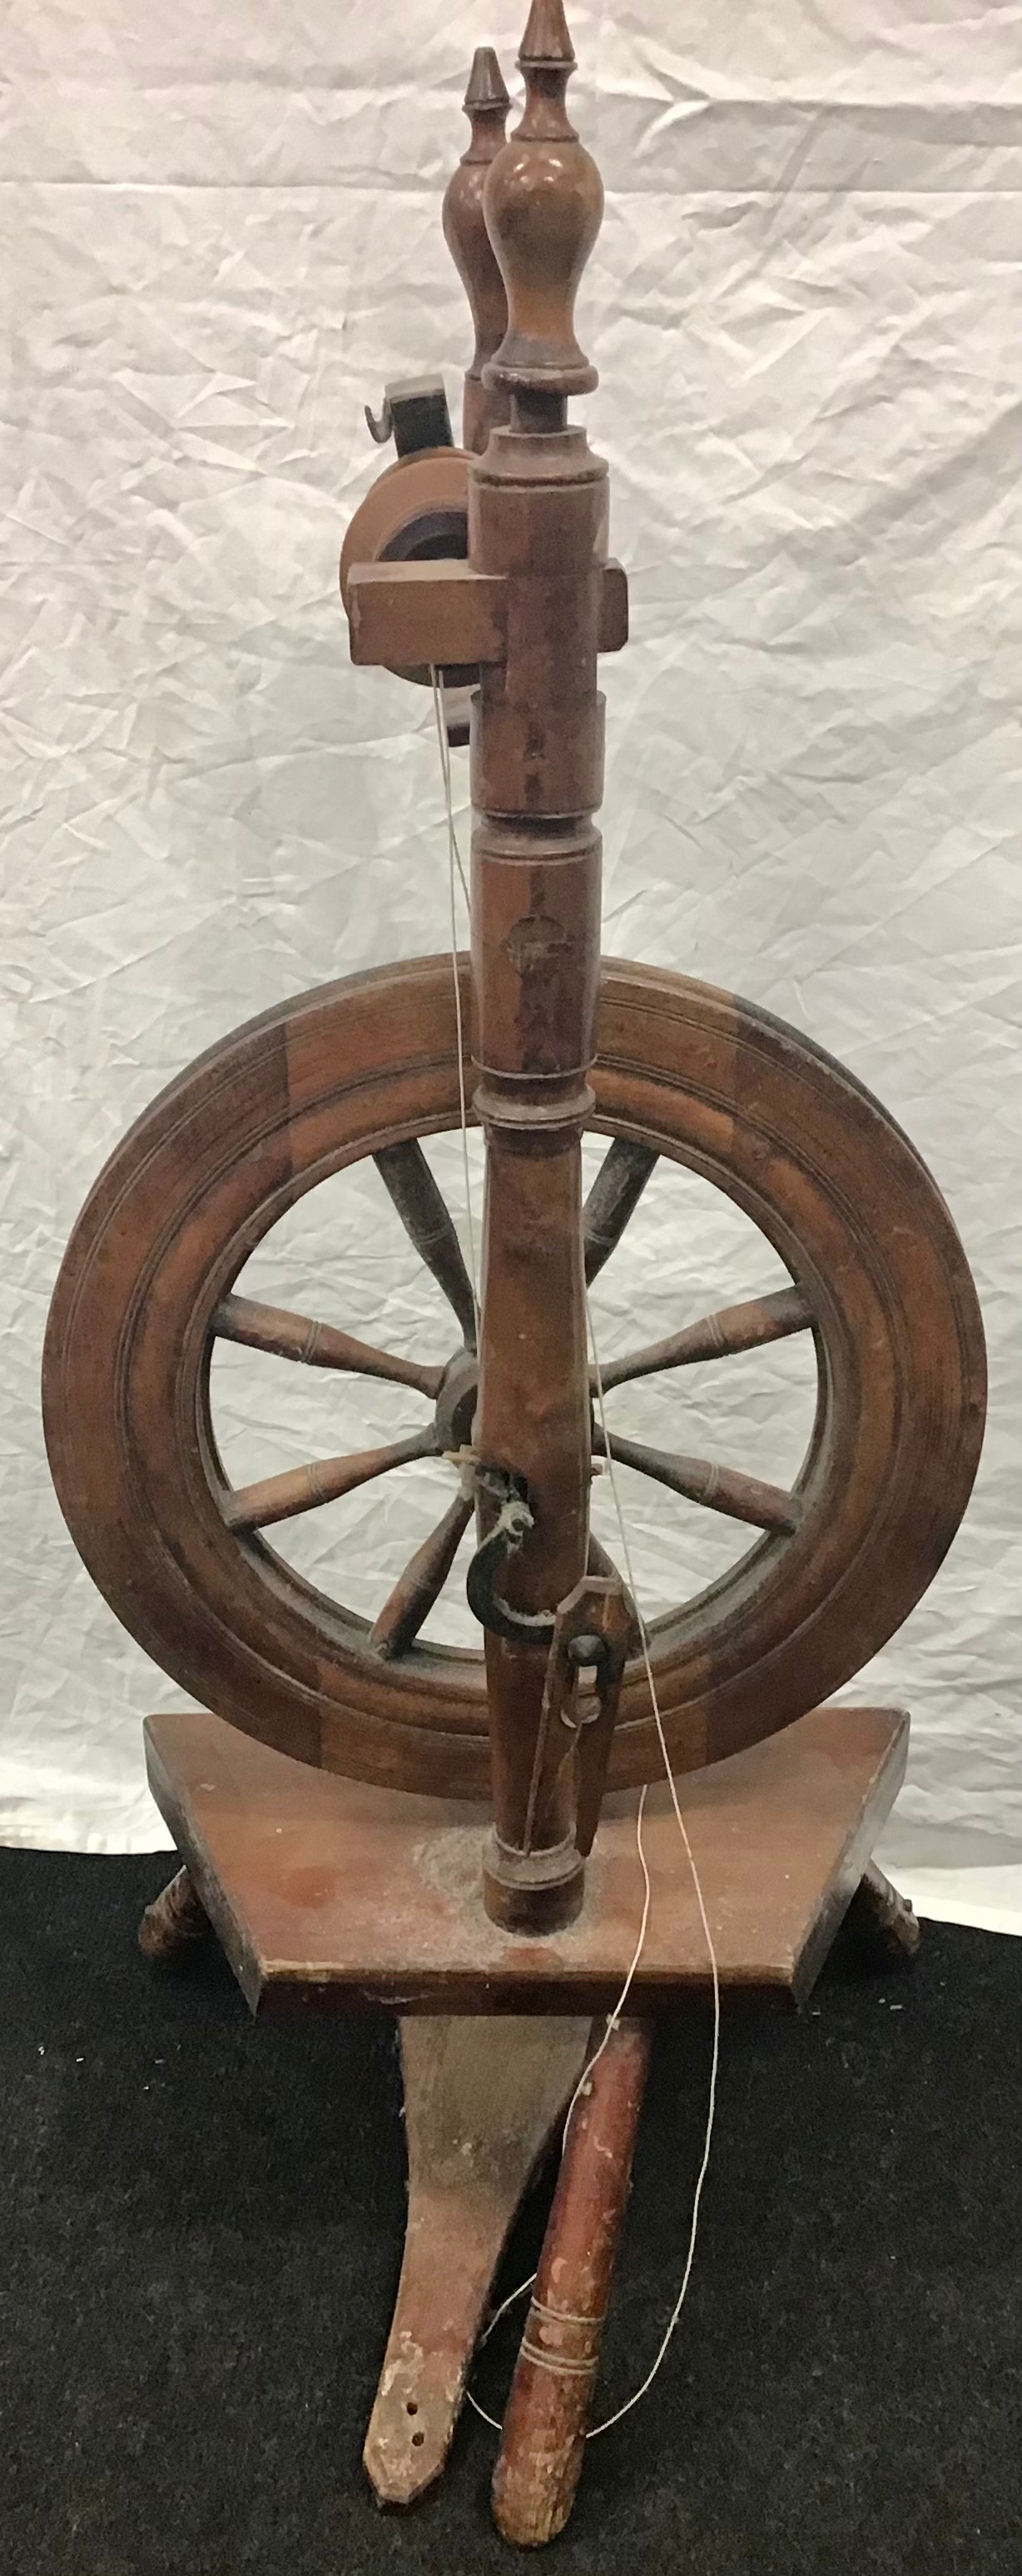 Wool spinning wheel - Image 3 of 3